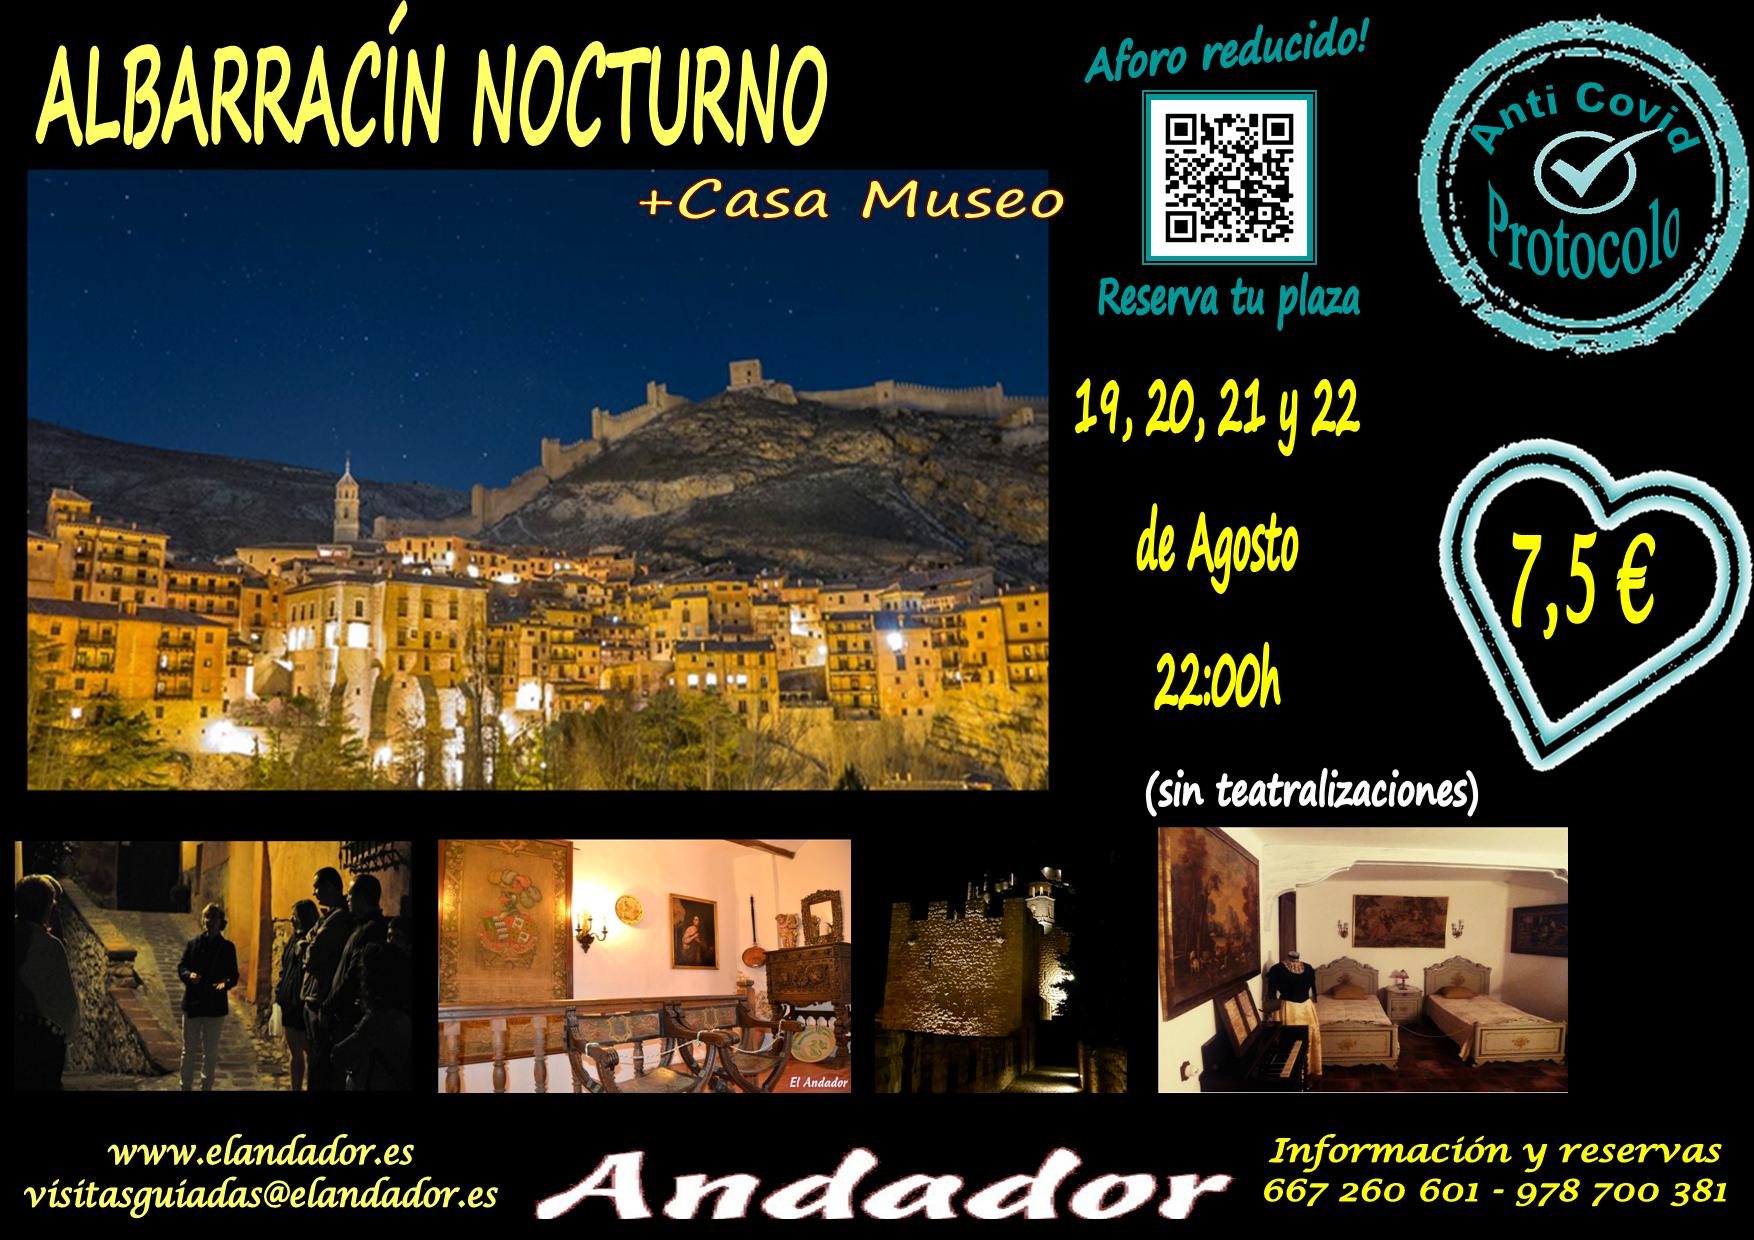 Visita Guiada Albarracín Nocturno: 19, 20, 21 y 22 de Agosto…con Casa Museo incluida!